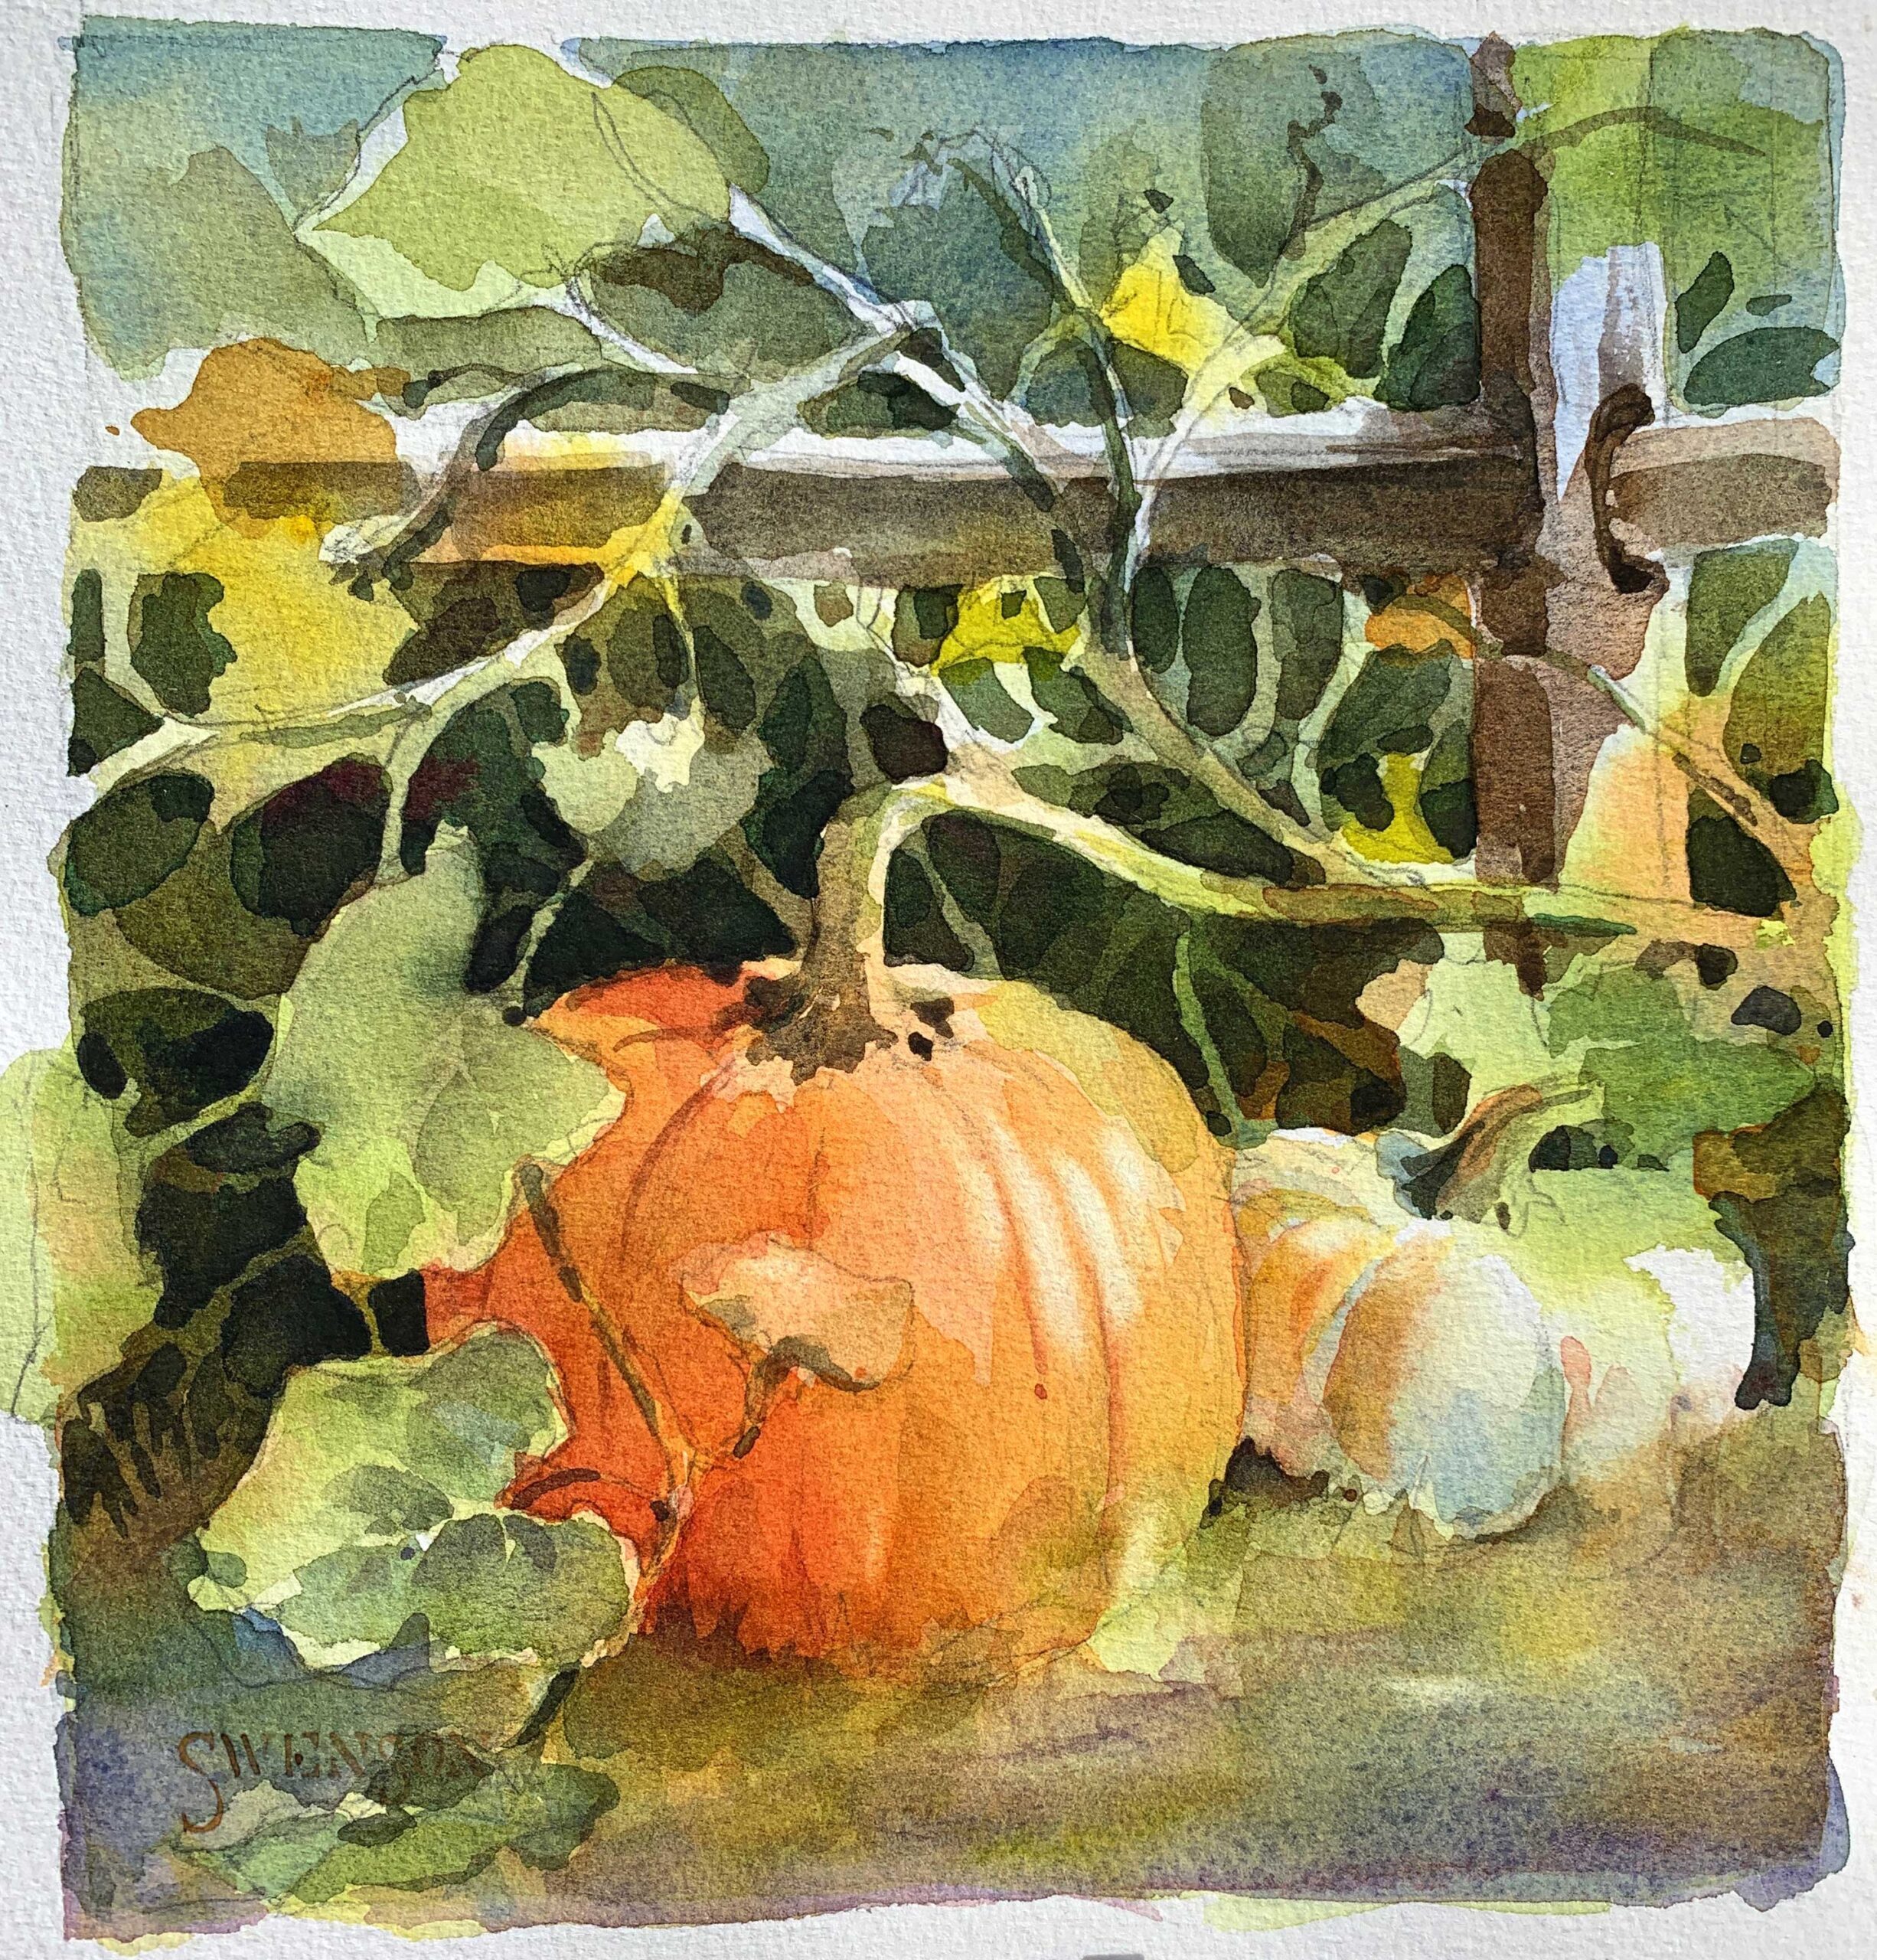 Brenda Swenson, "Autumnleaf Farm," 2018, watercolor, 9 x 8 in., Private collection, Plein air